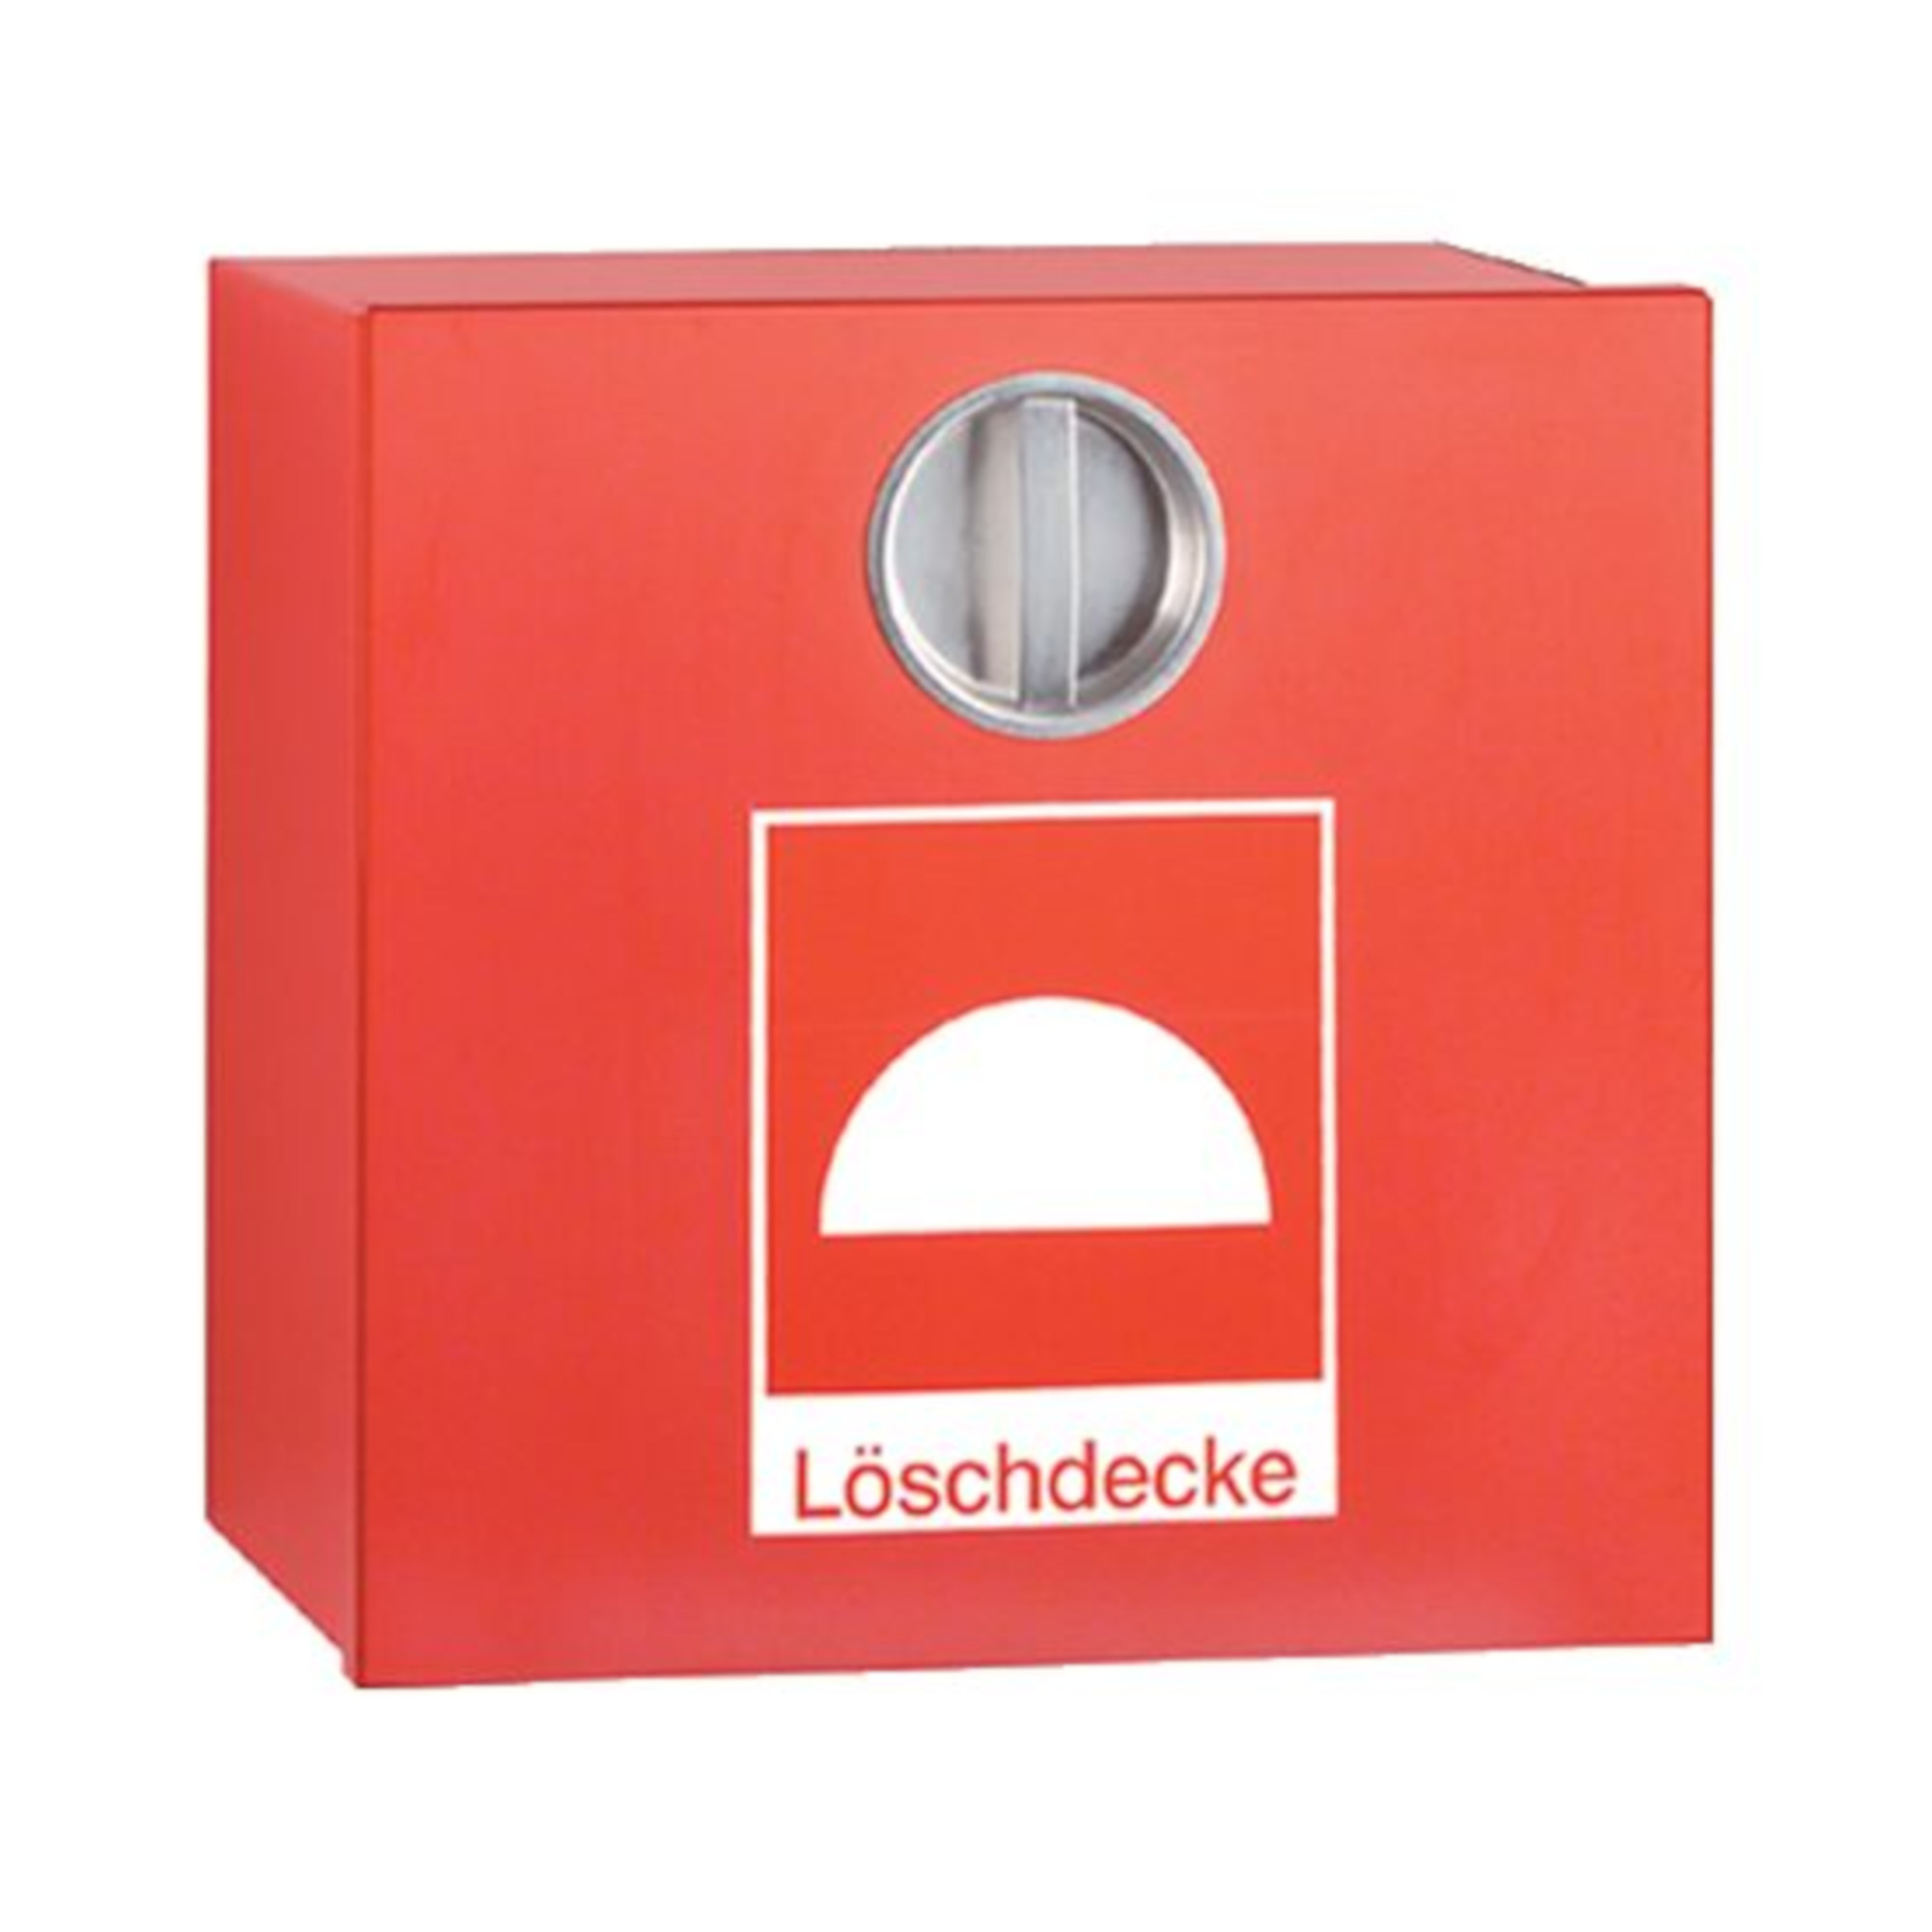 Löschdeckenbehälter LB3 rot, aus verzinktem Stahlblech mit Drehverschluss. Abmessungen: 315 x 305 x 125 mm